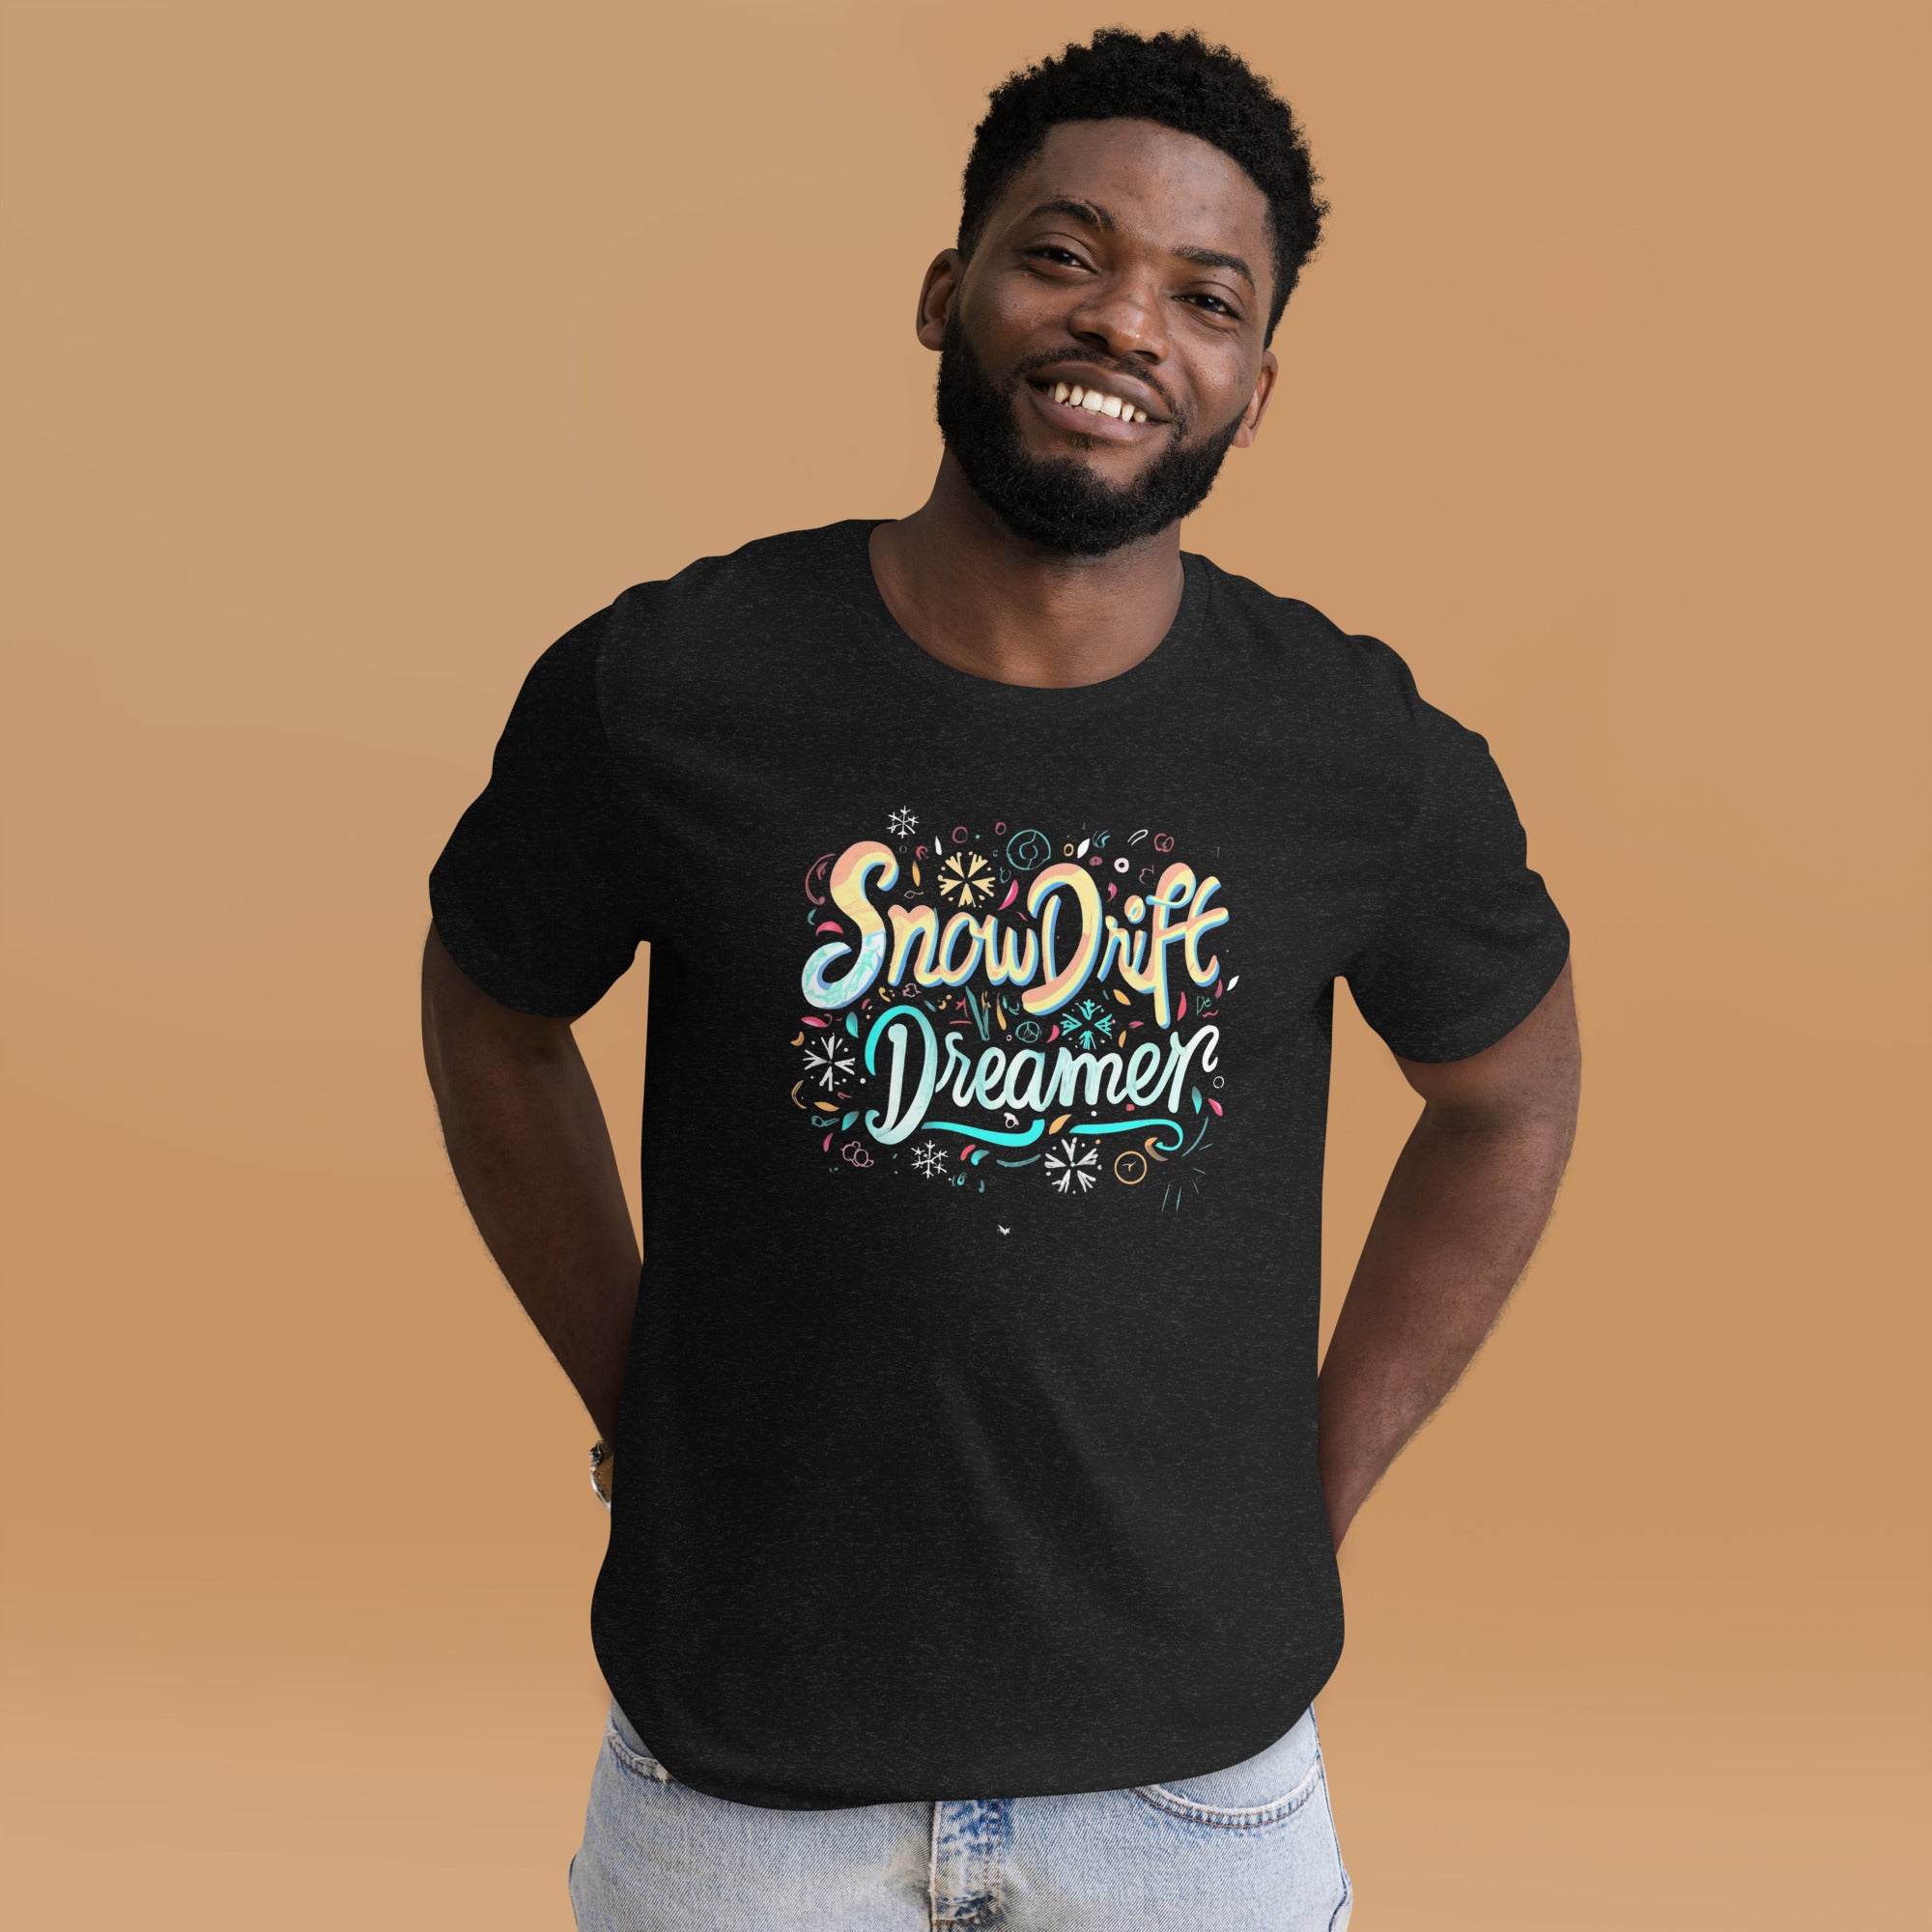 Snowdrift Dreamer Shirt For Men Or Women